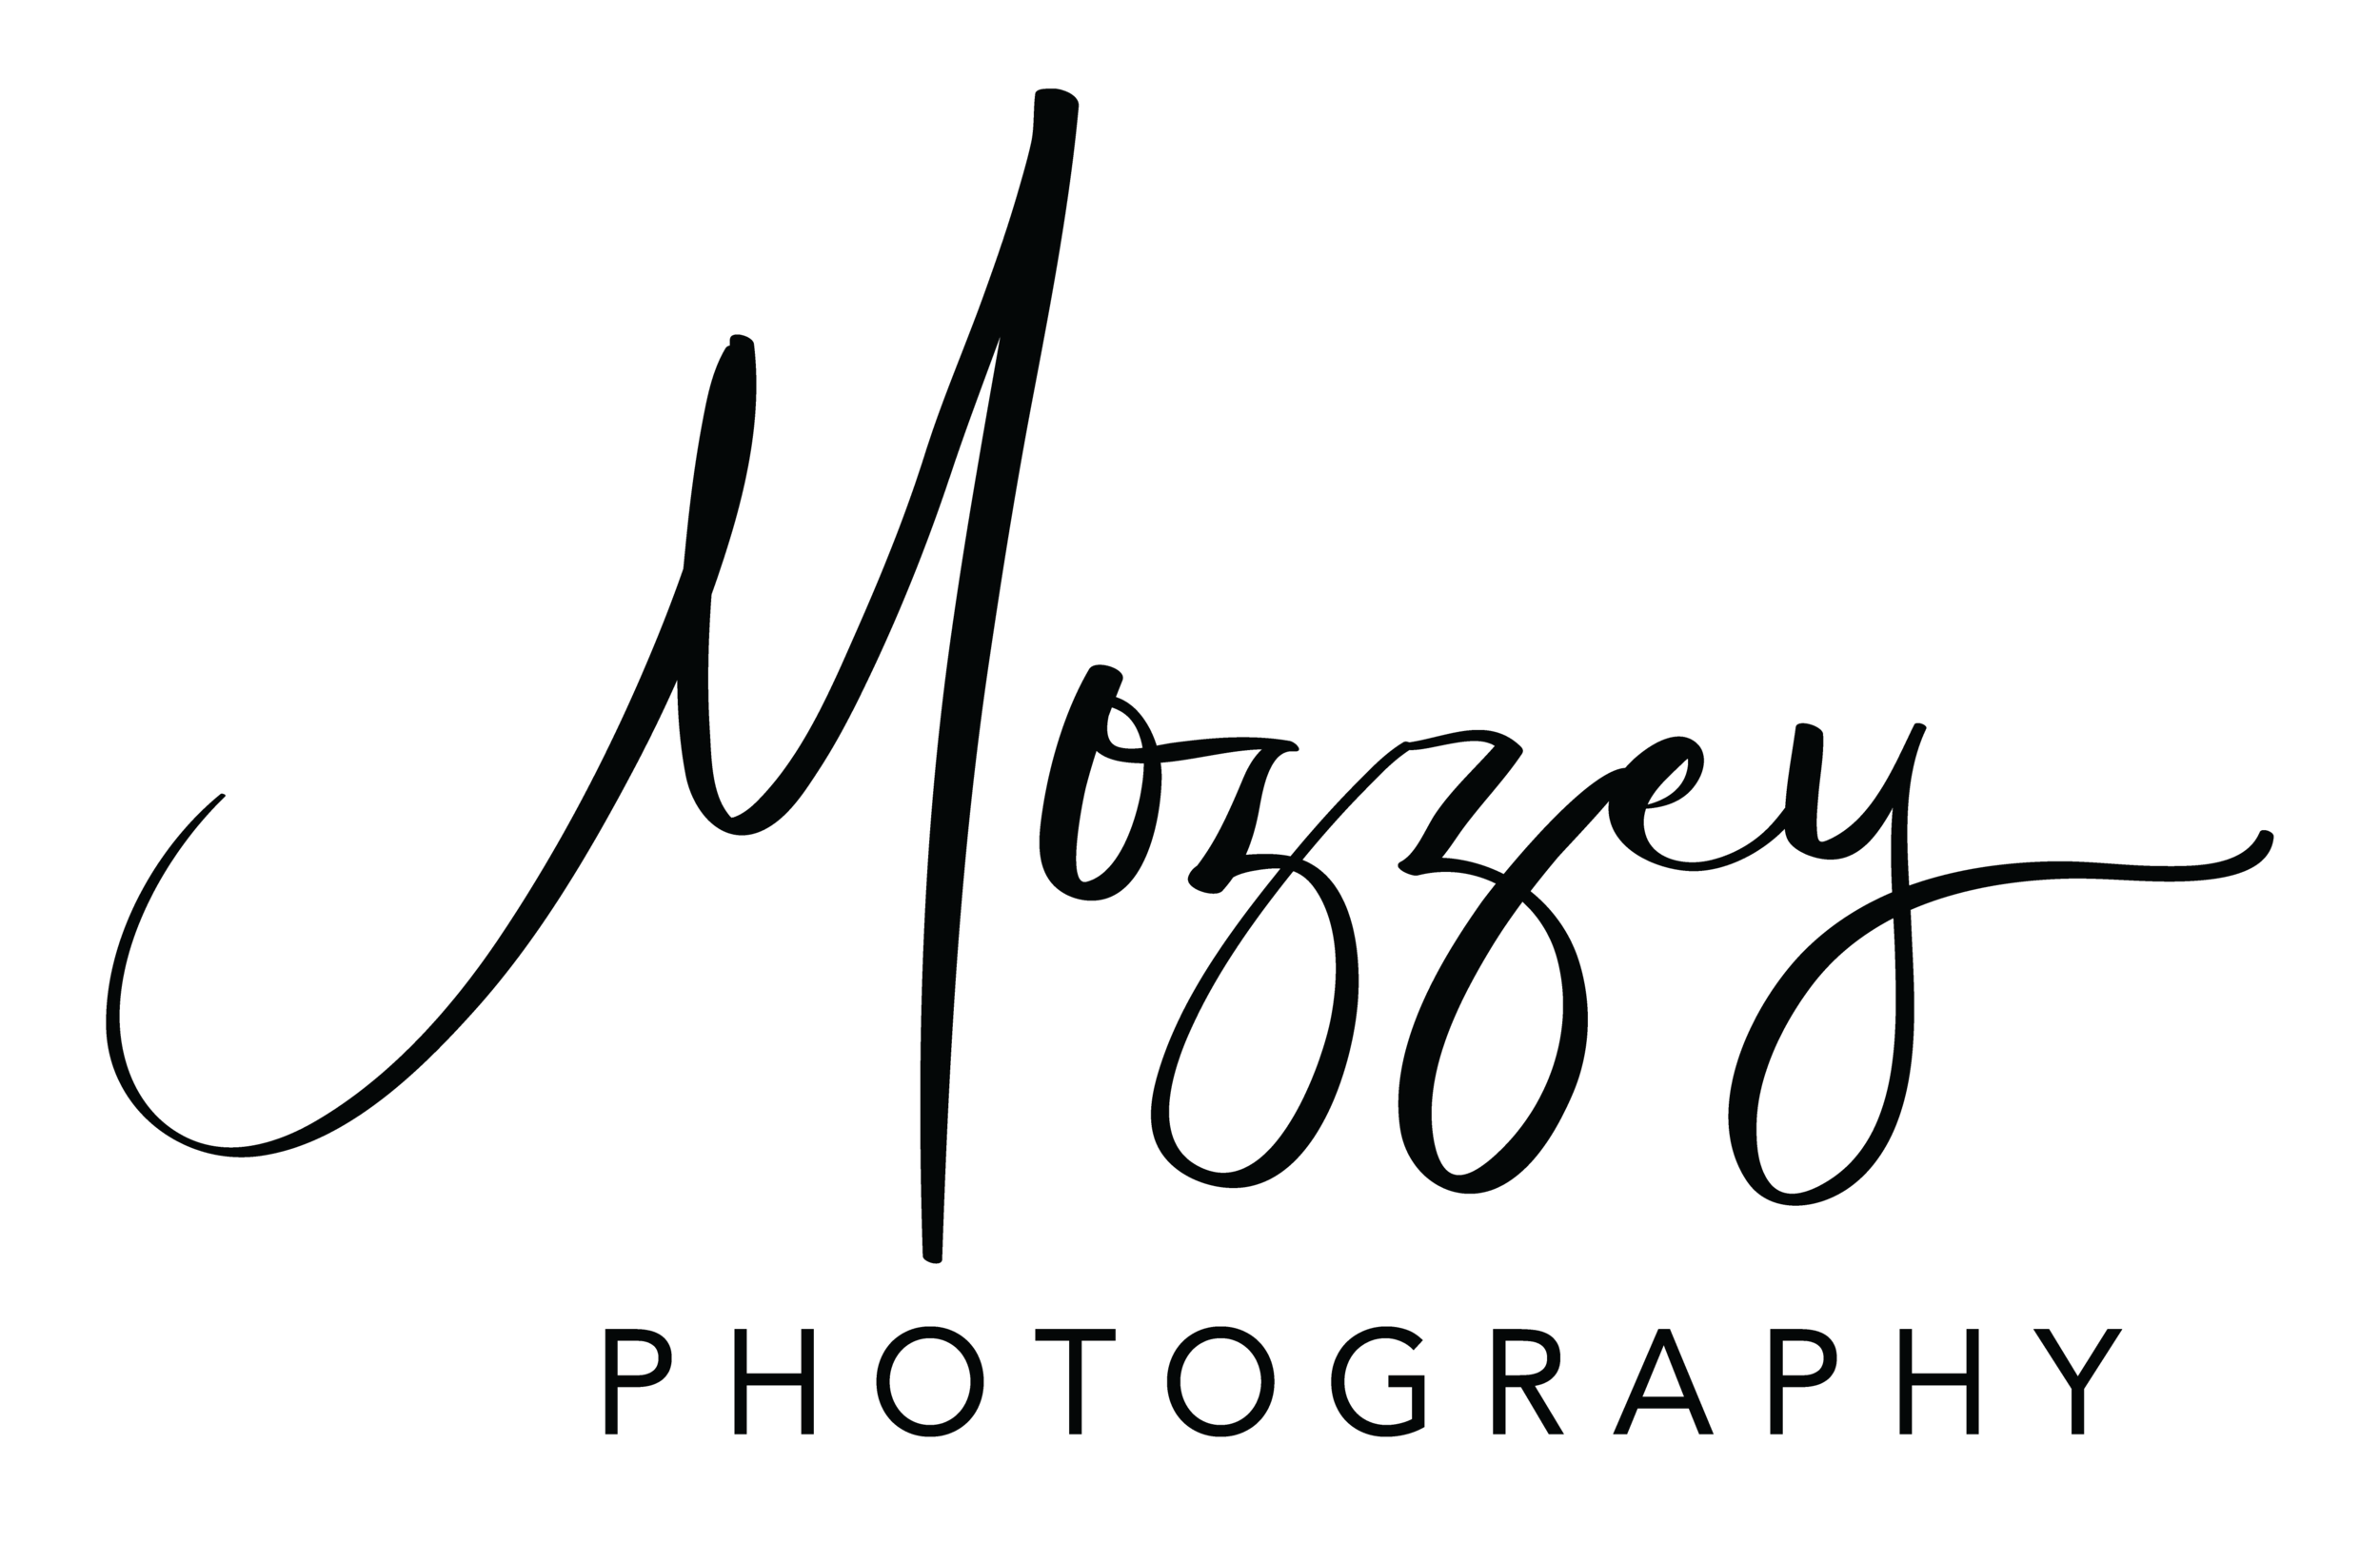 Mozzey Photography